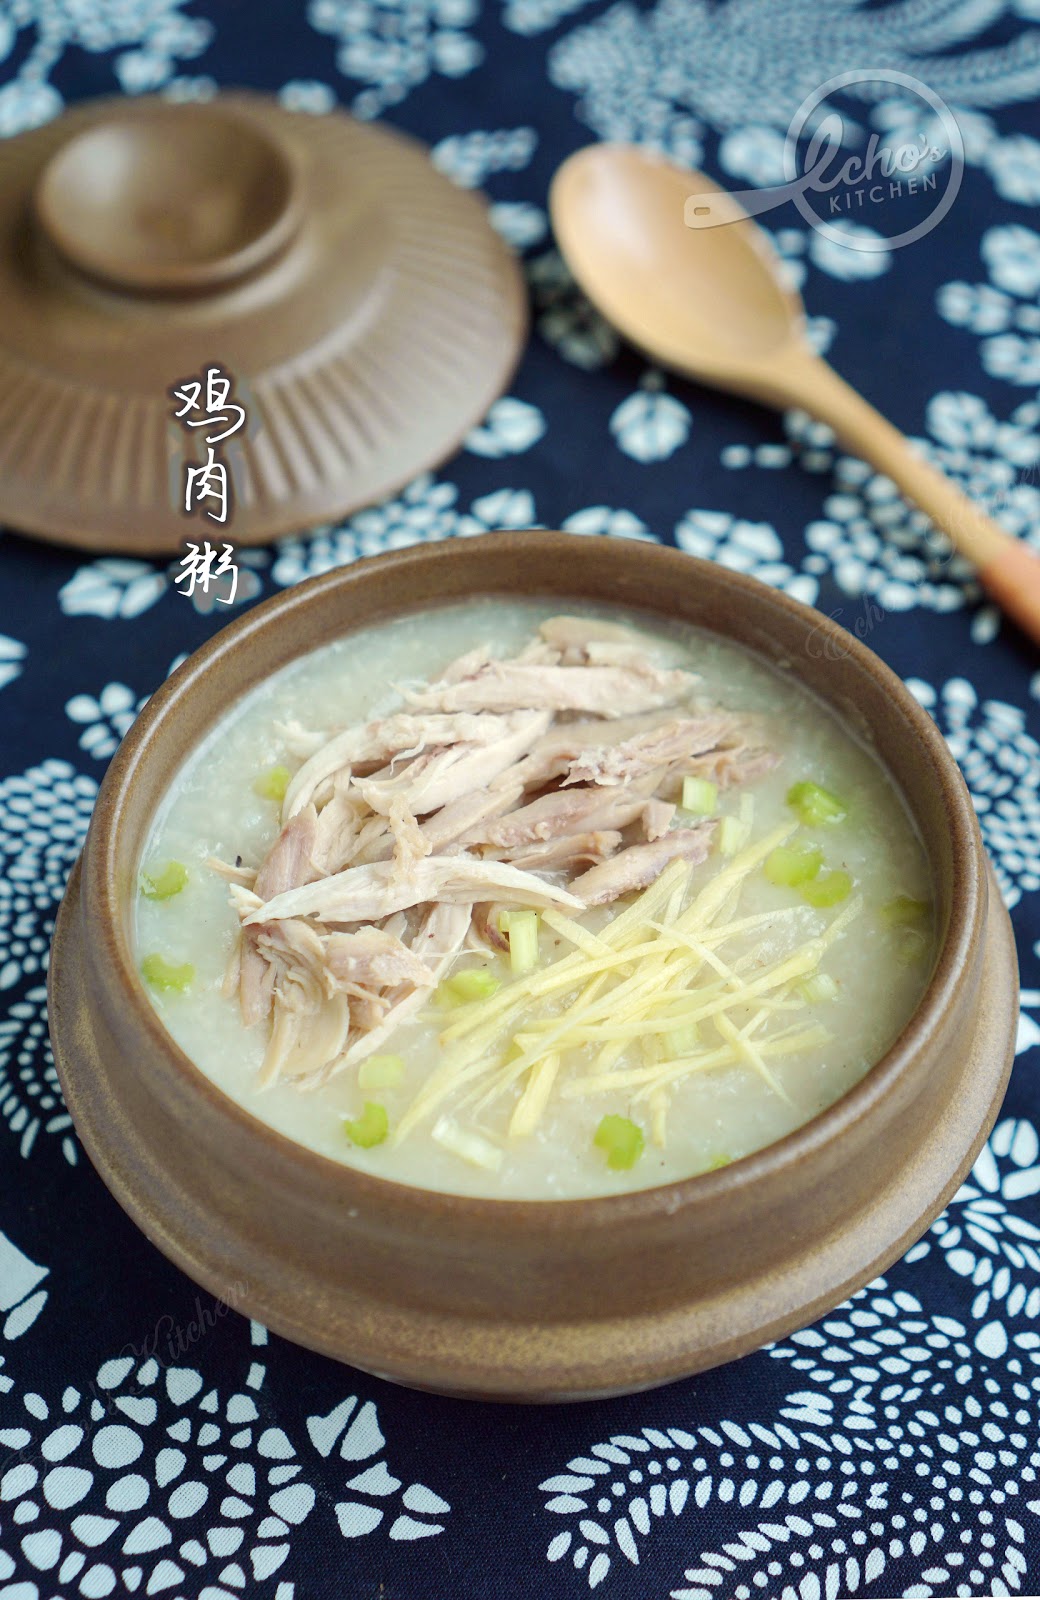 鮮美雞粥 - Cook With Solee